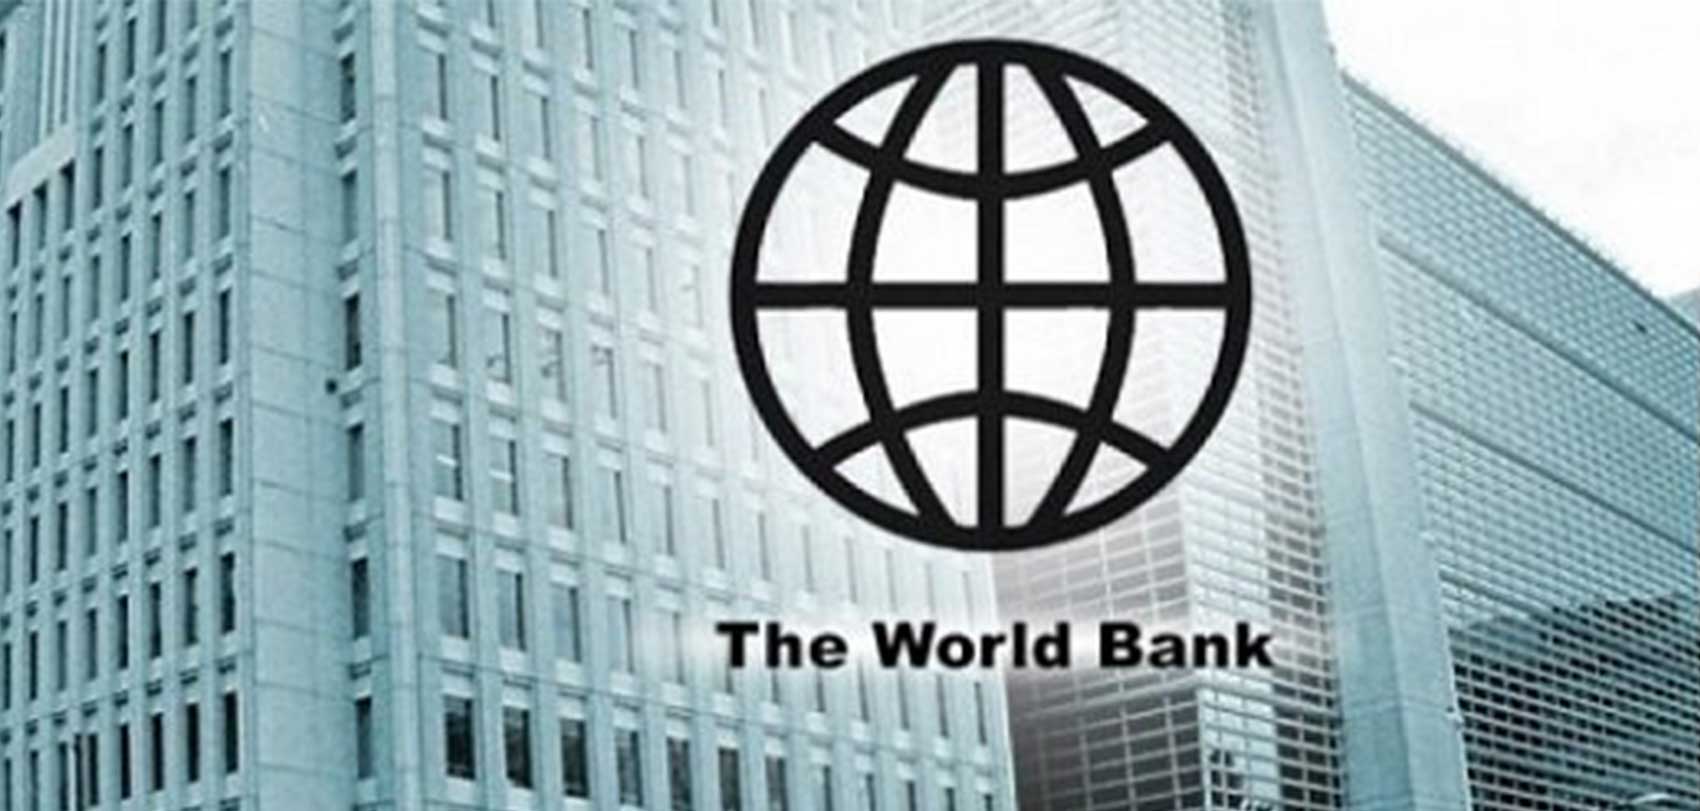 विश्व बैंकले थप १५ करोड अमेरिकी डलर नेपाललाई दिने (भिडियो रिपोर्टसहित)